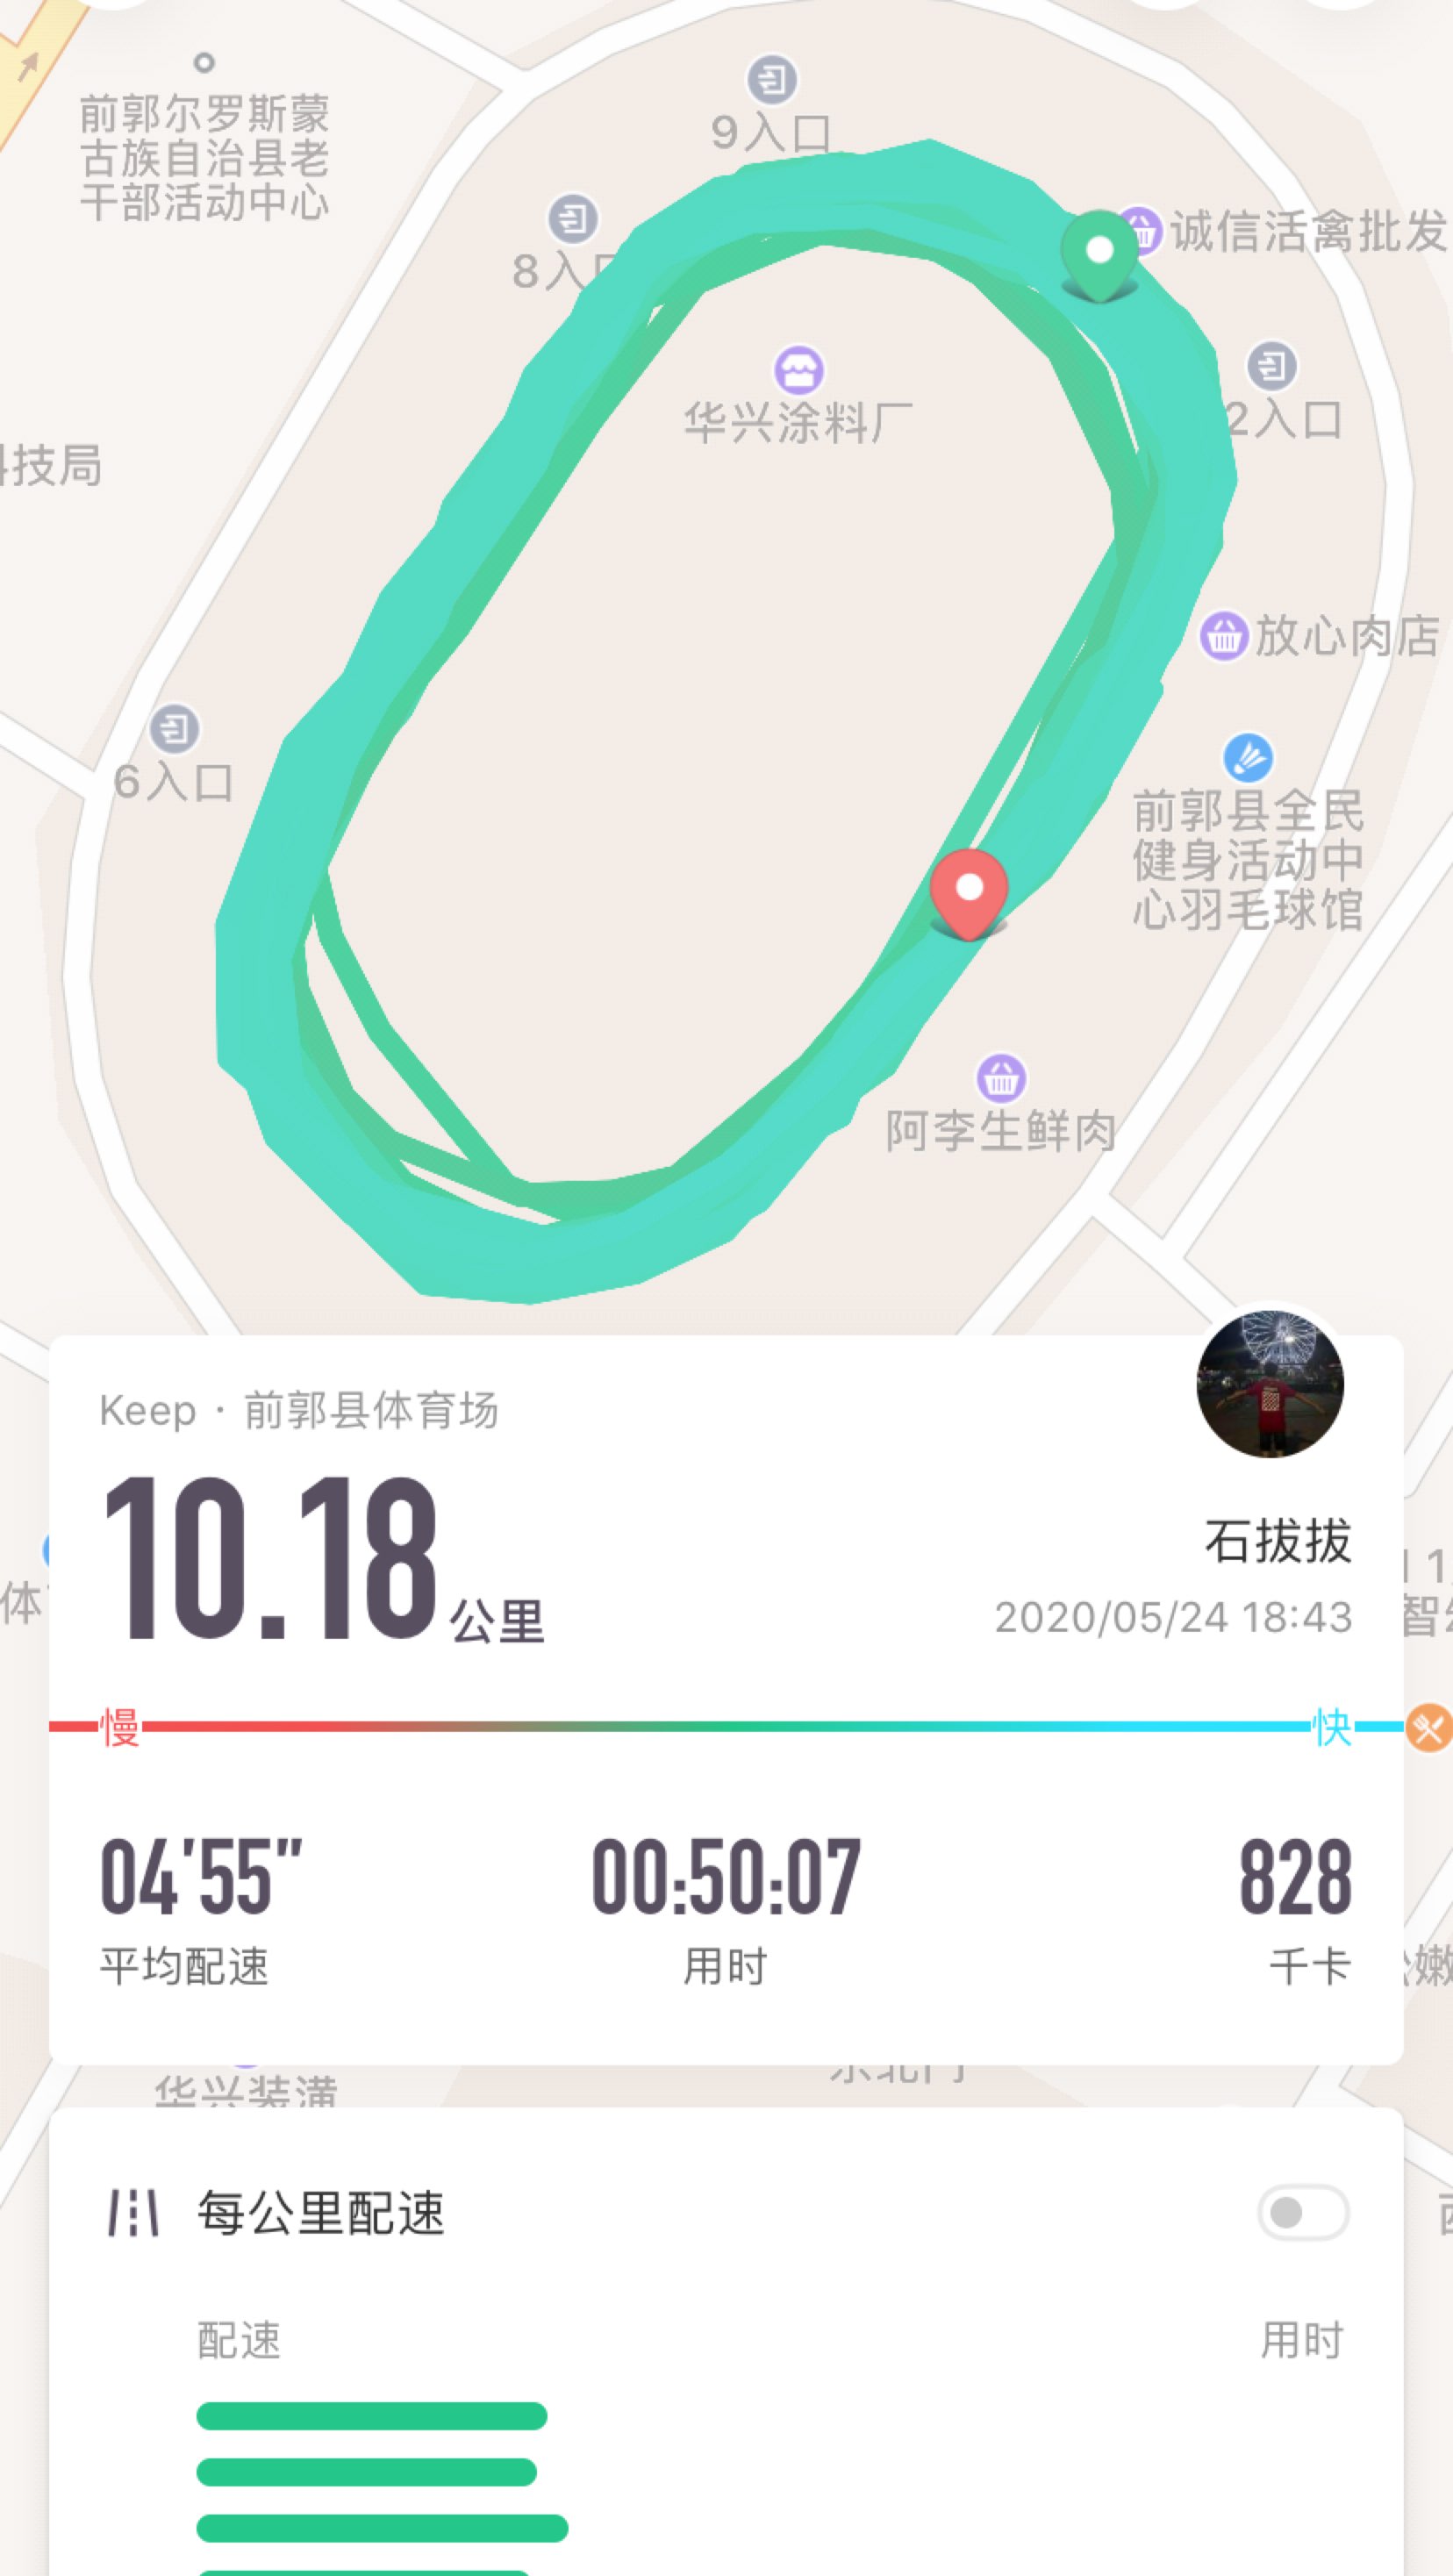 1公里, 50分7秒  完成 前郭县体育场  刷新了10km跑最佳成绩的个人